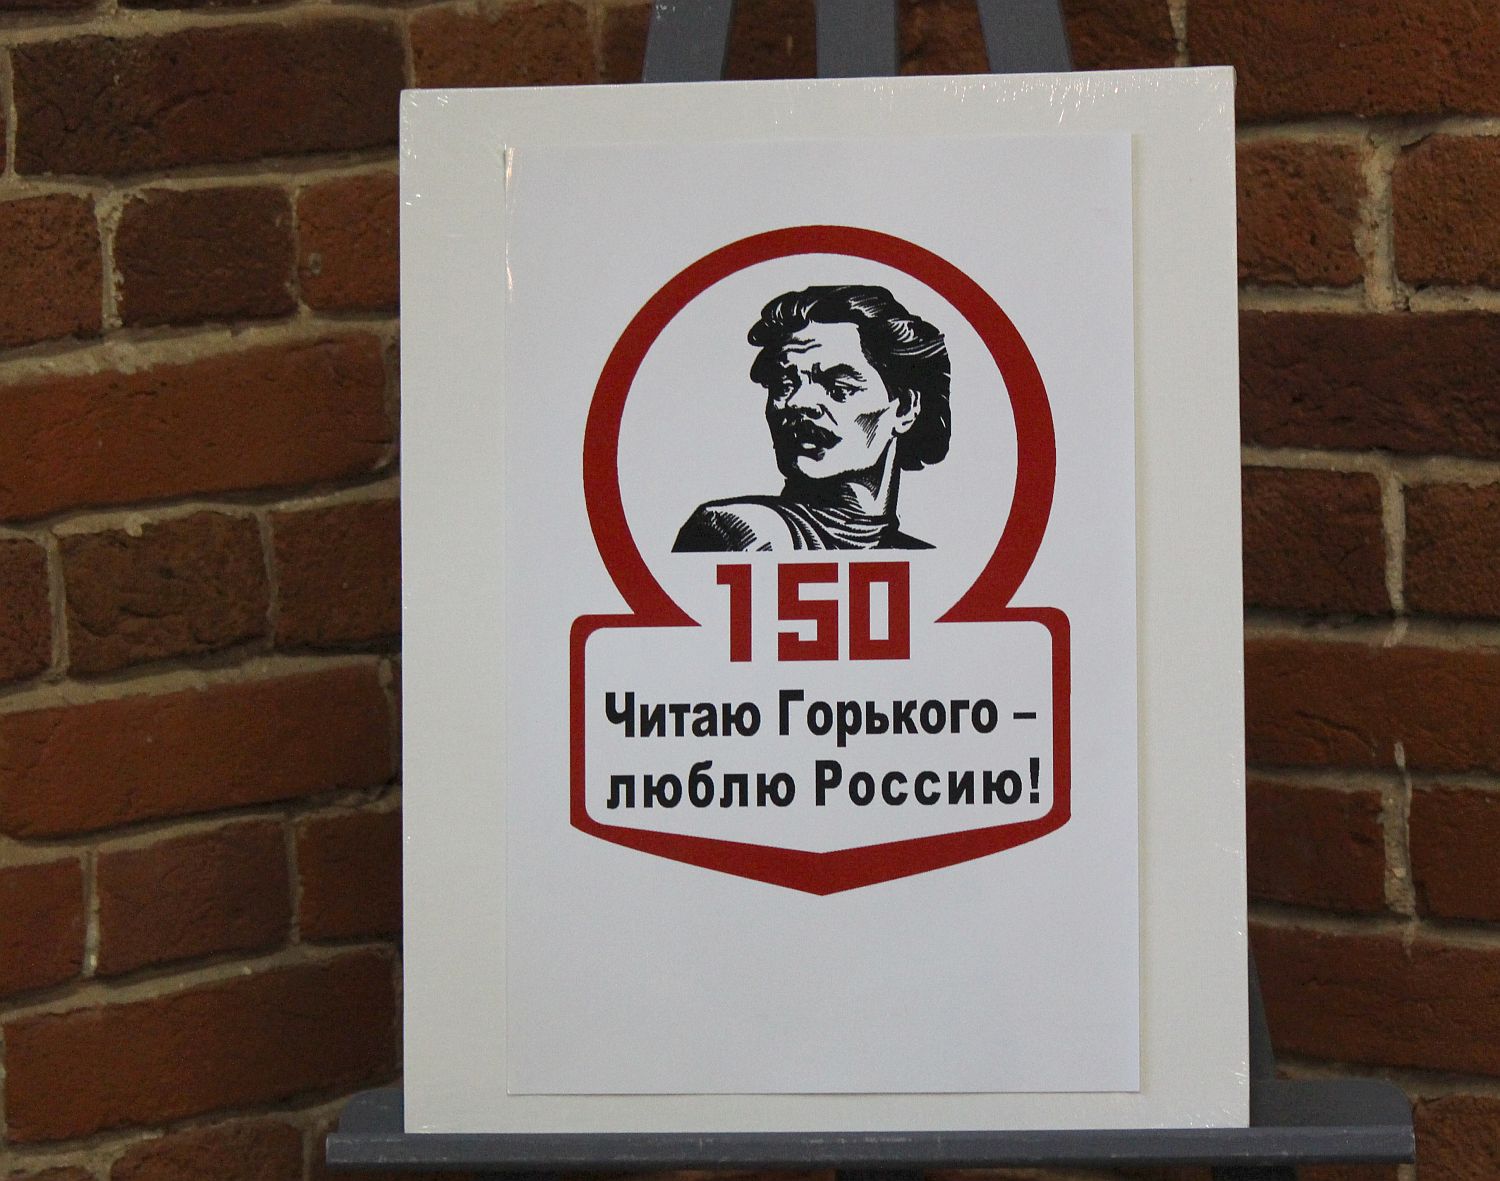 Флешмоб для автомобилистов пройдет в Нижнем Новгороде в честь юбилея Горького - фото 1